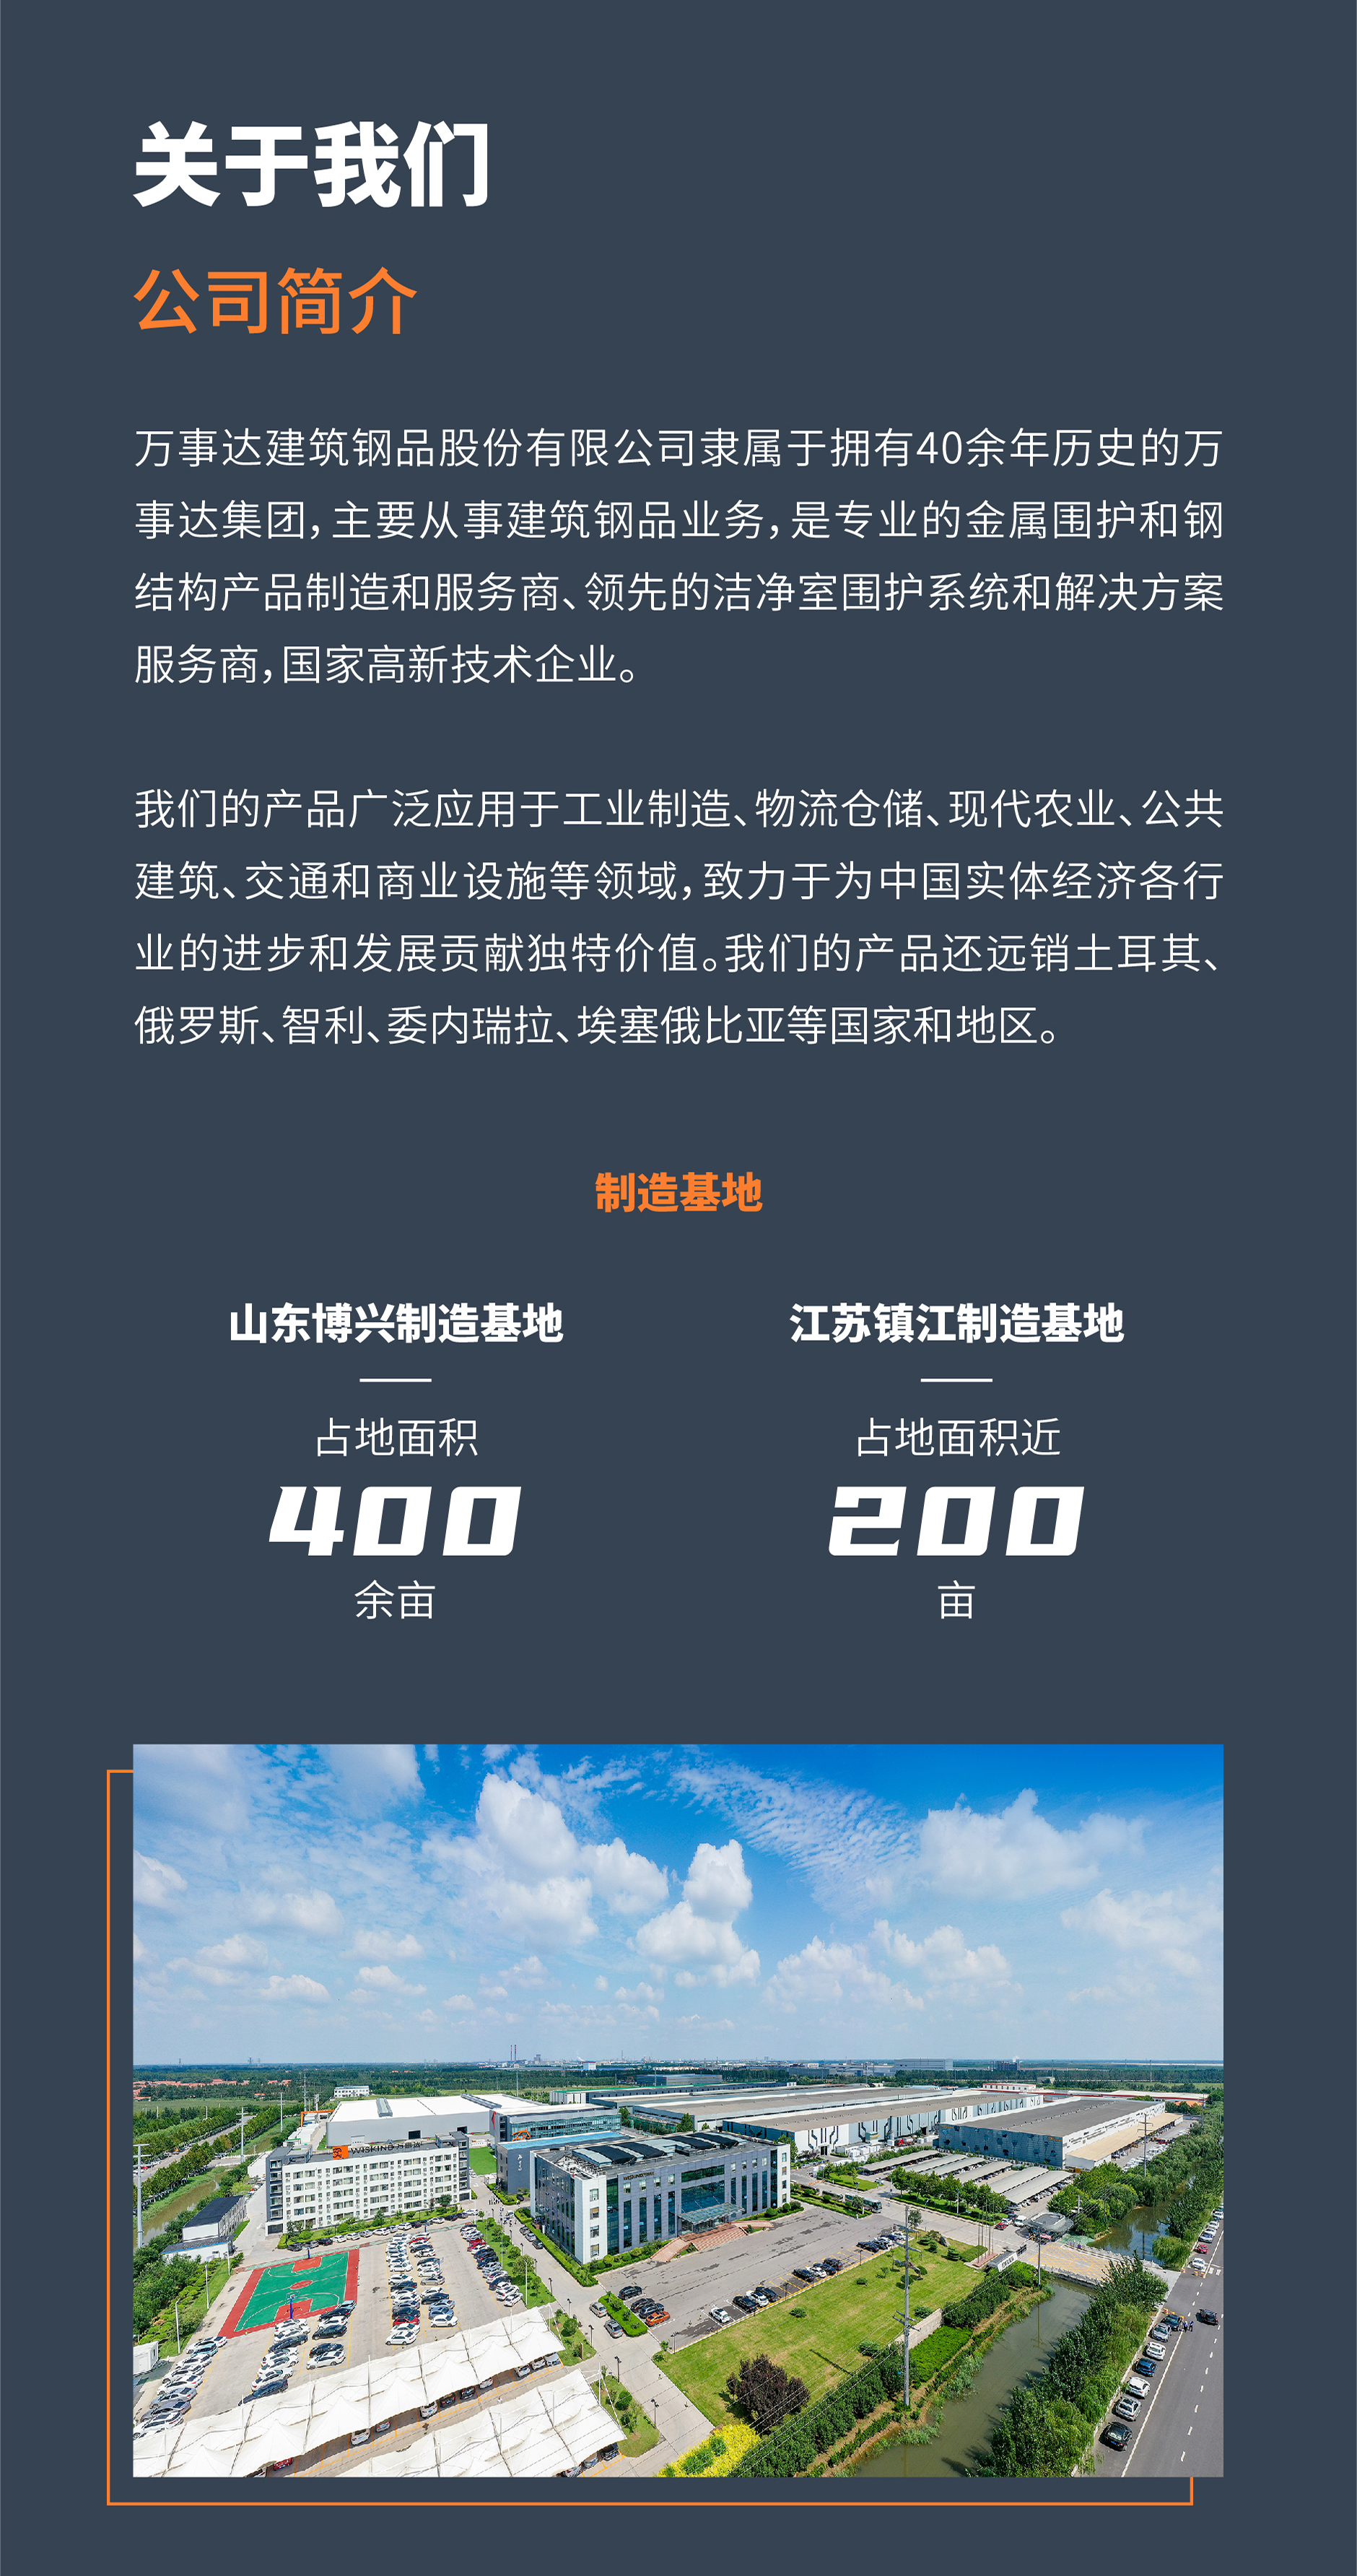 002-开元(中国)集团有限公司官网.jpg